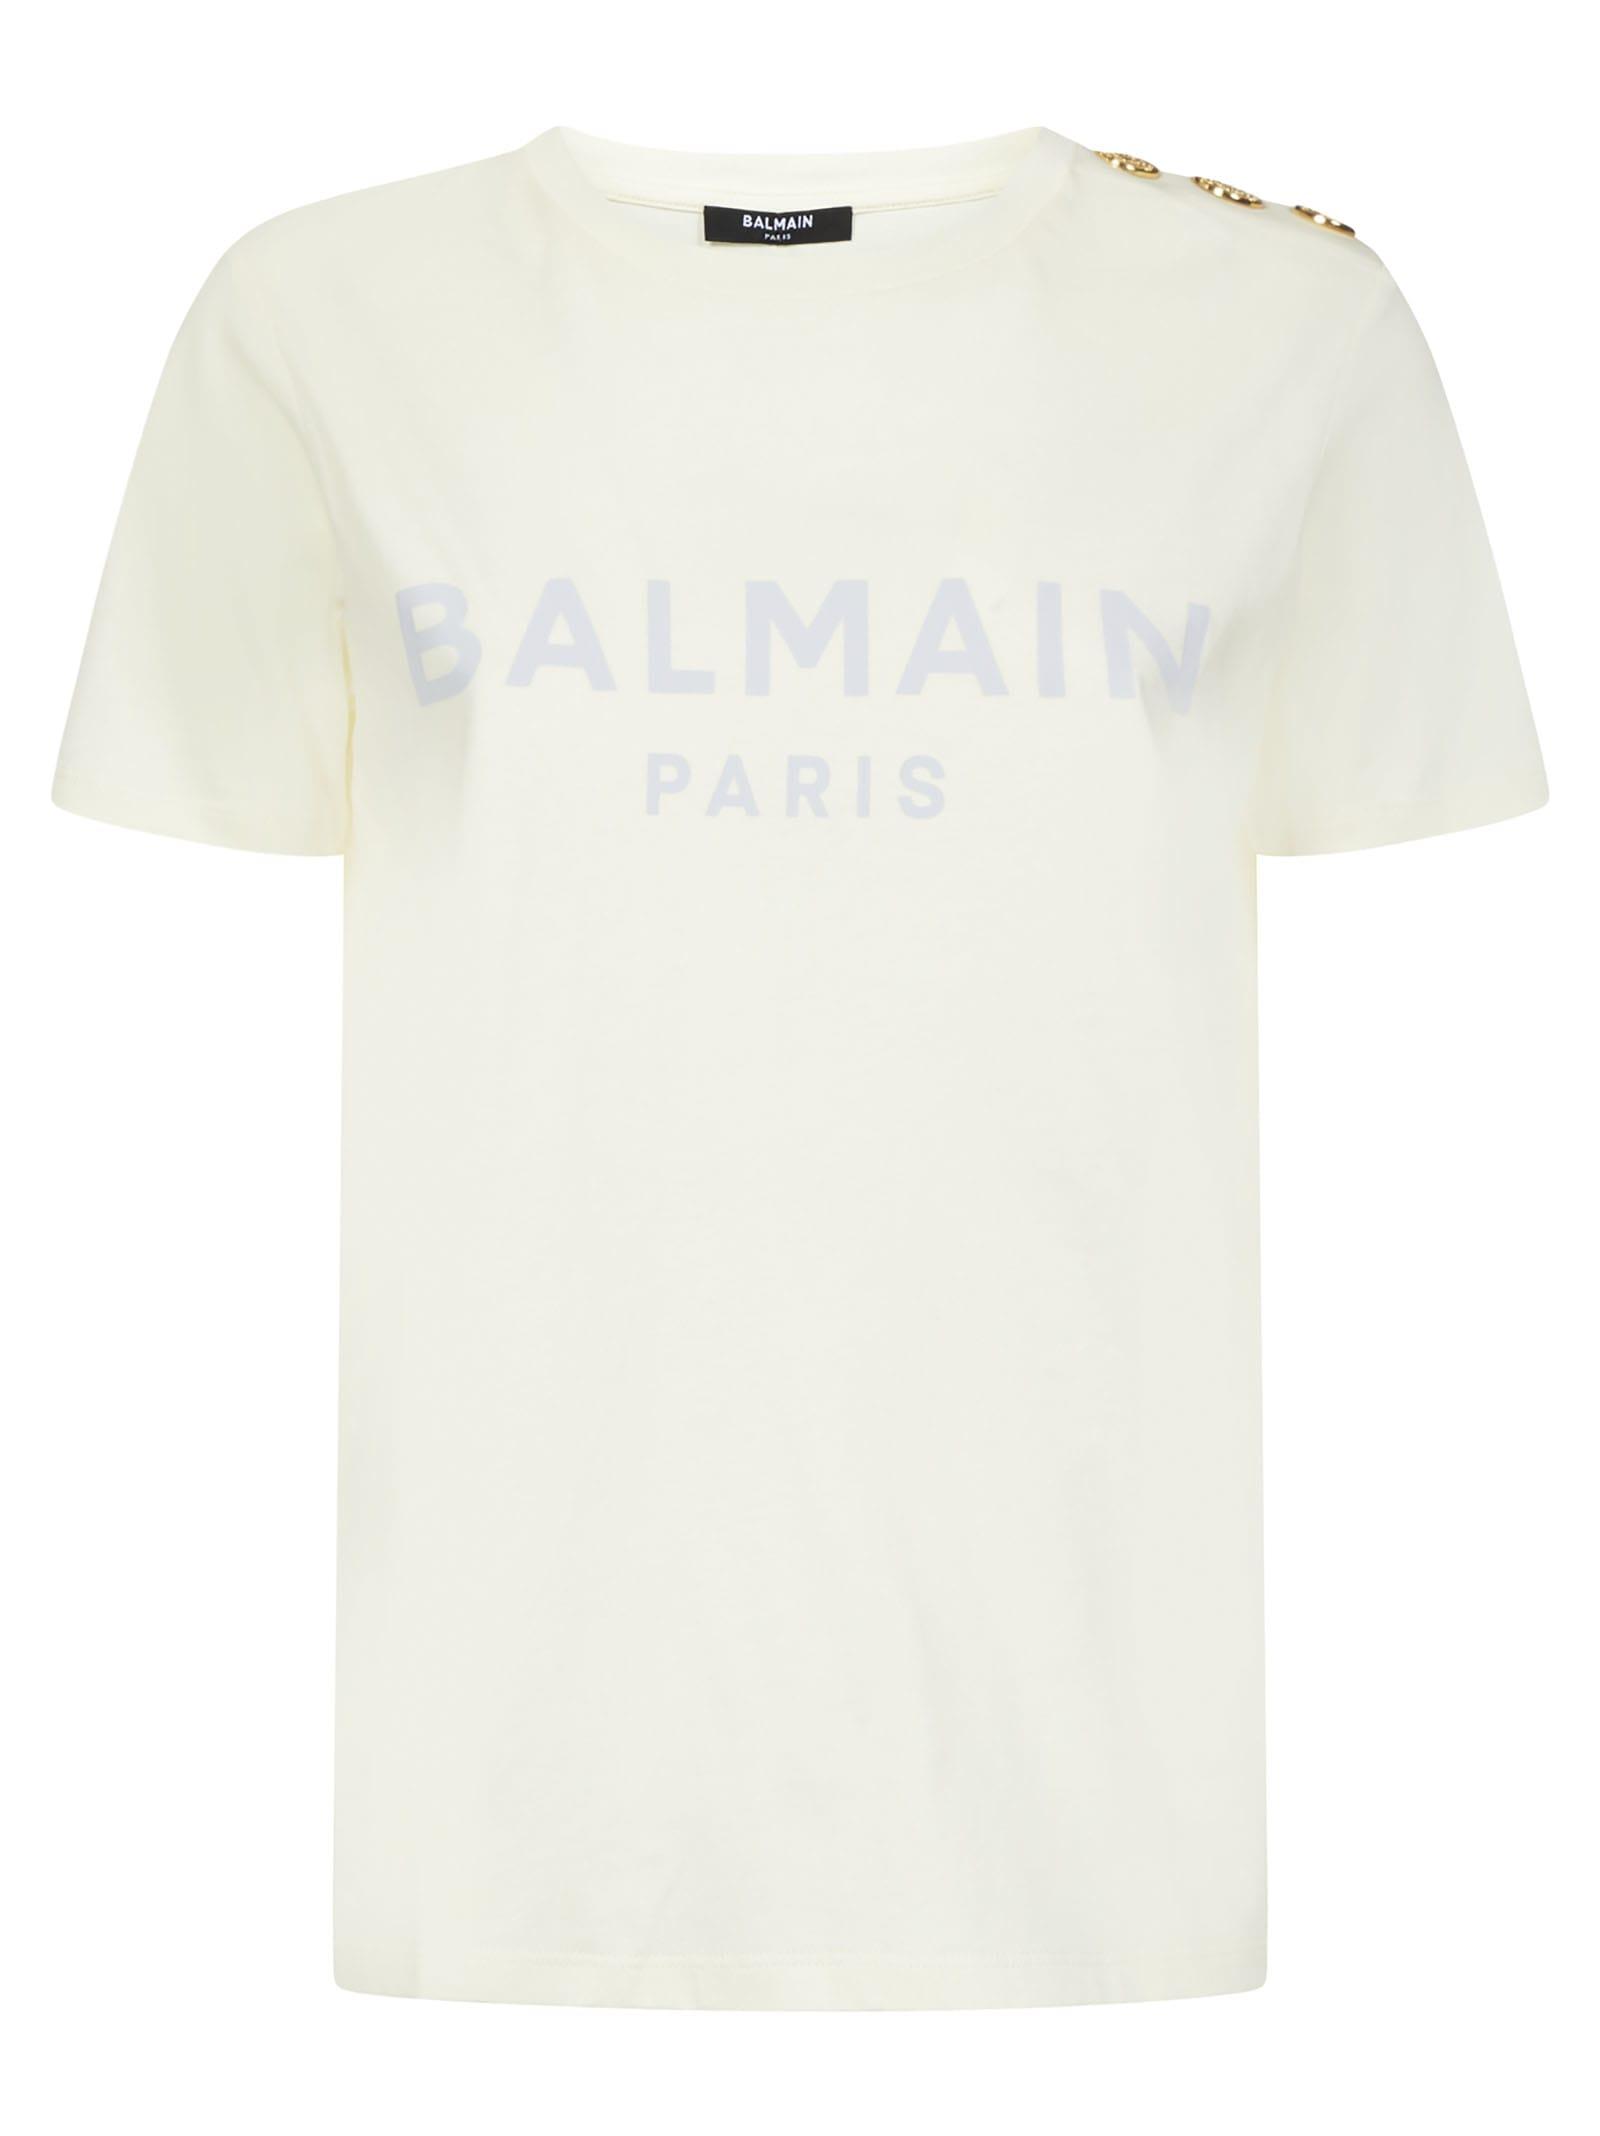 Balmain Paris T-shirt in White | Lyst